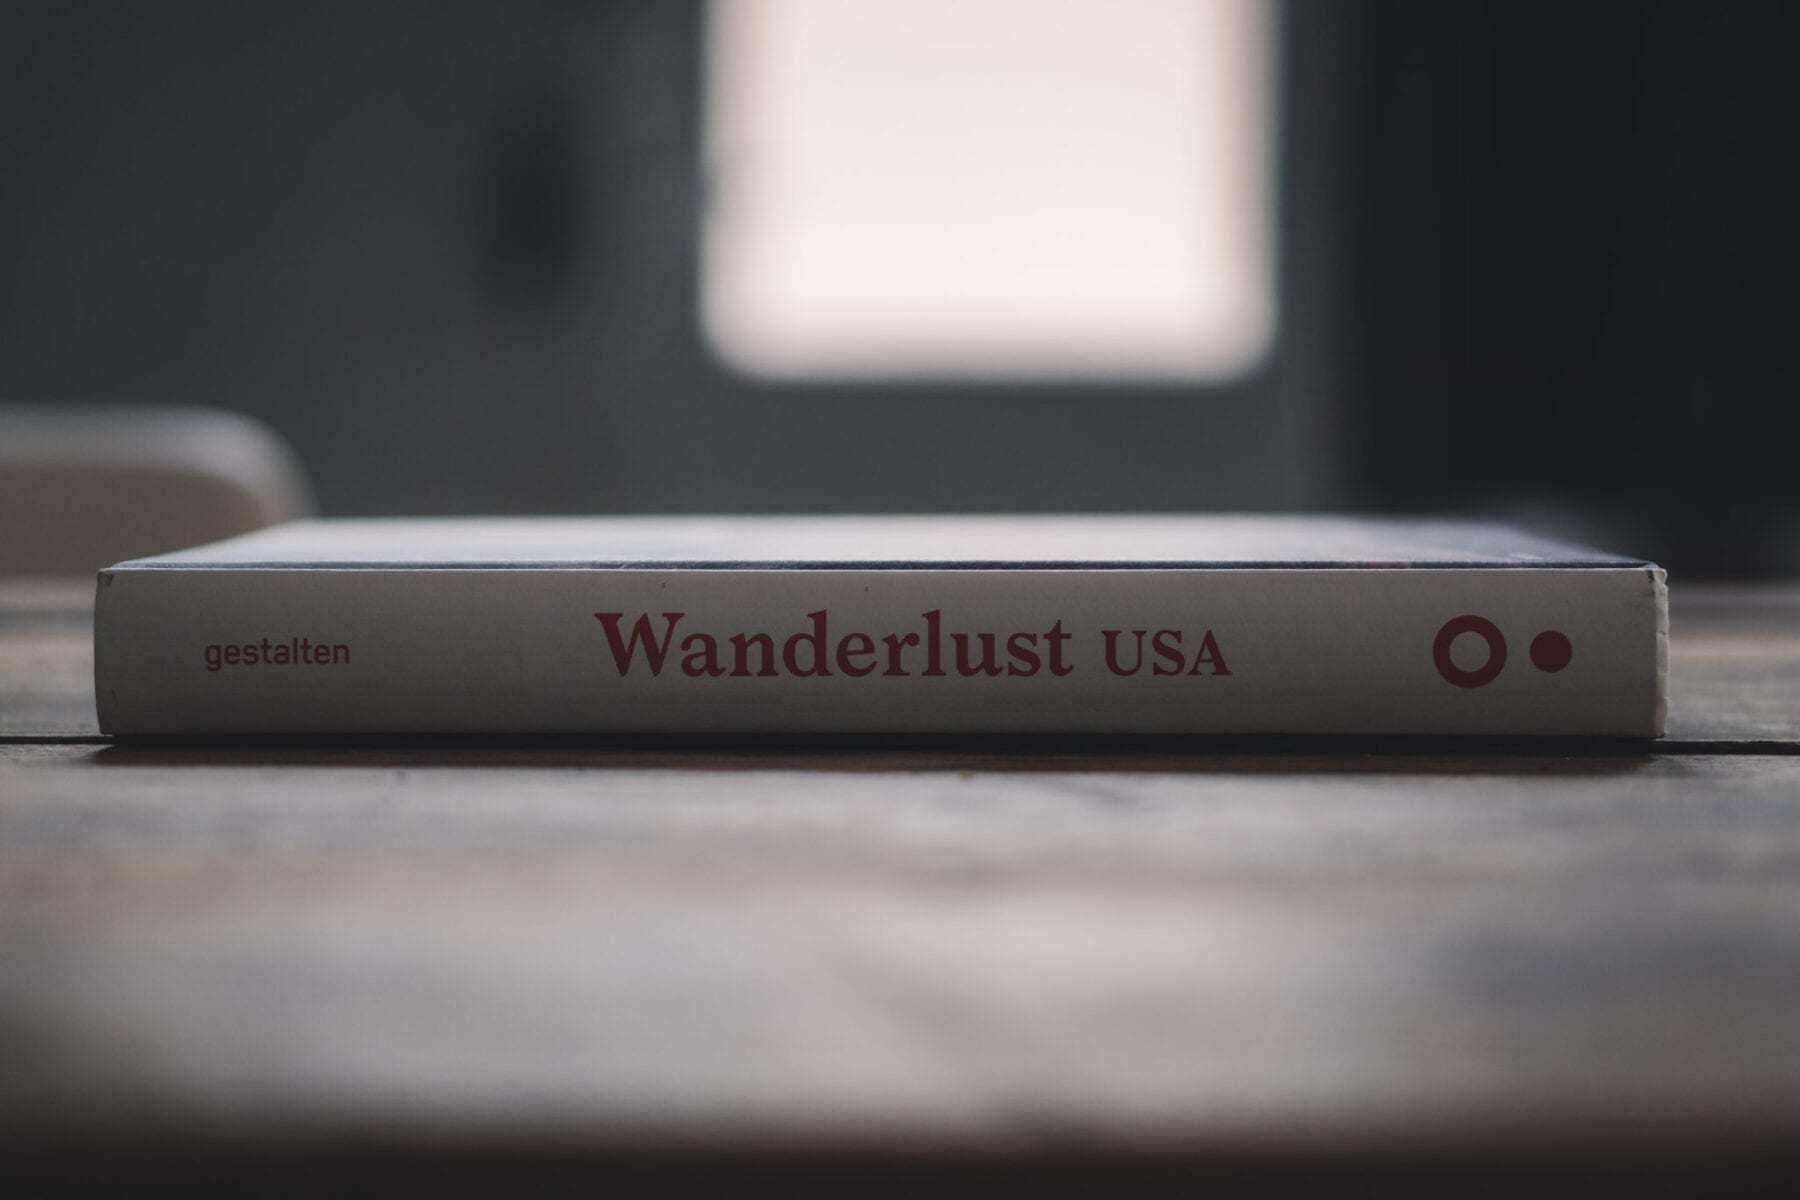 Wanderlust USA Gestalten boek cover rug